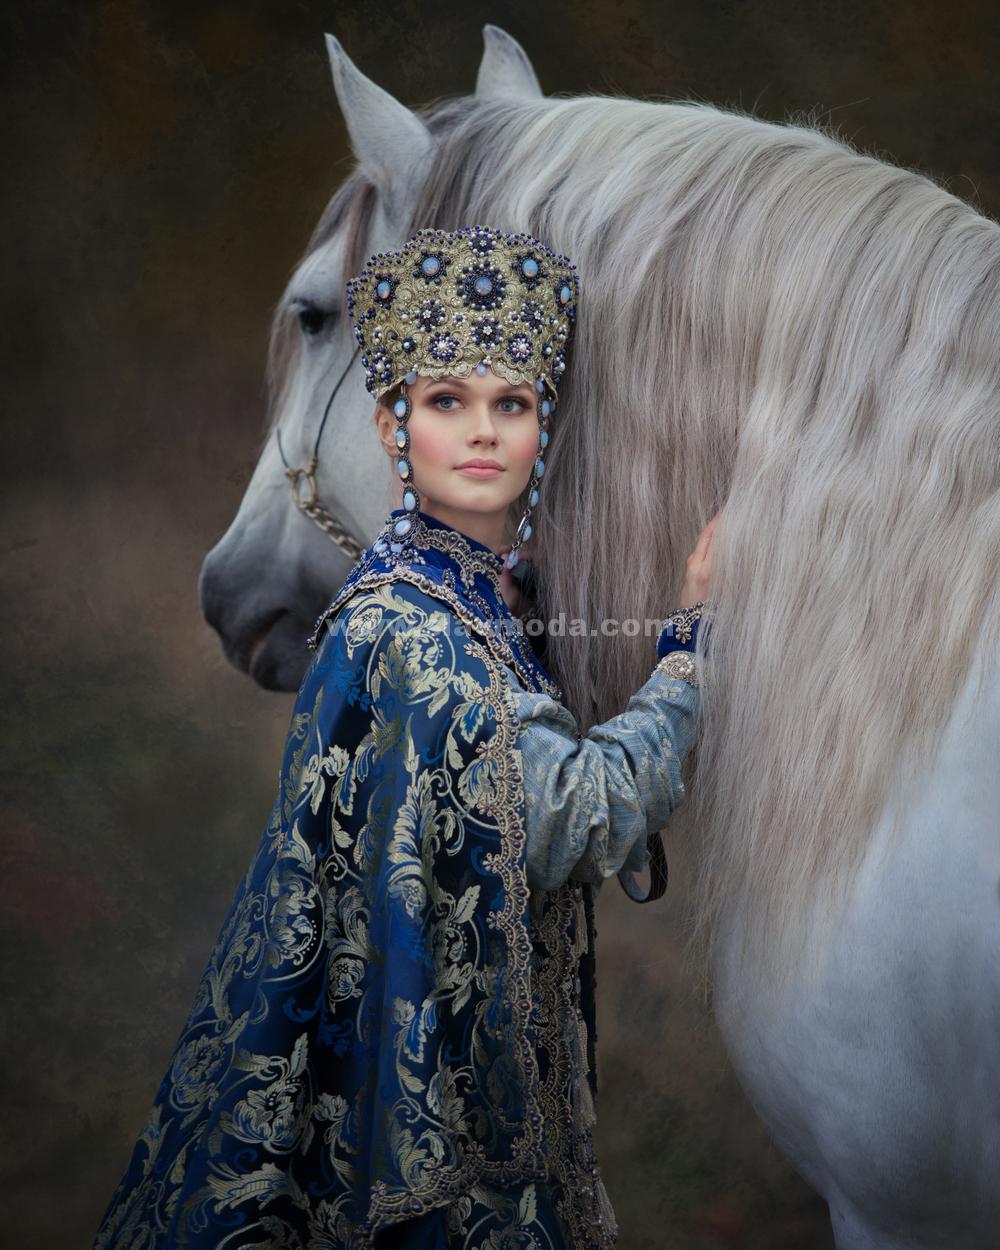 Сказочная фотосессия - девушка в русском наряде и грациозная лошадь.